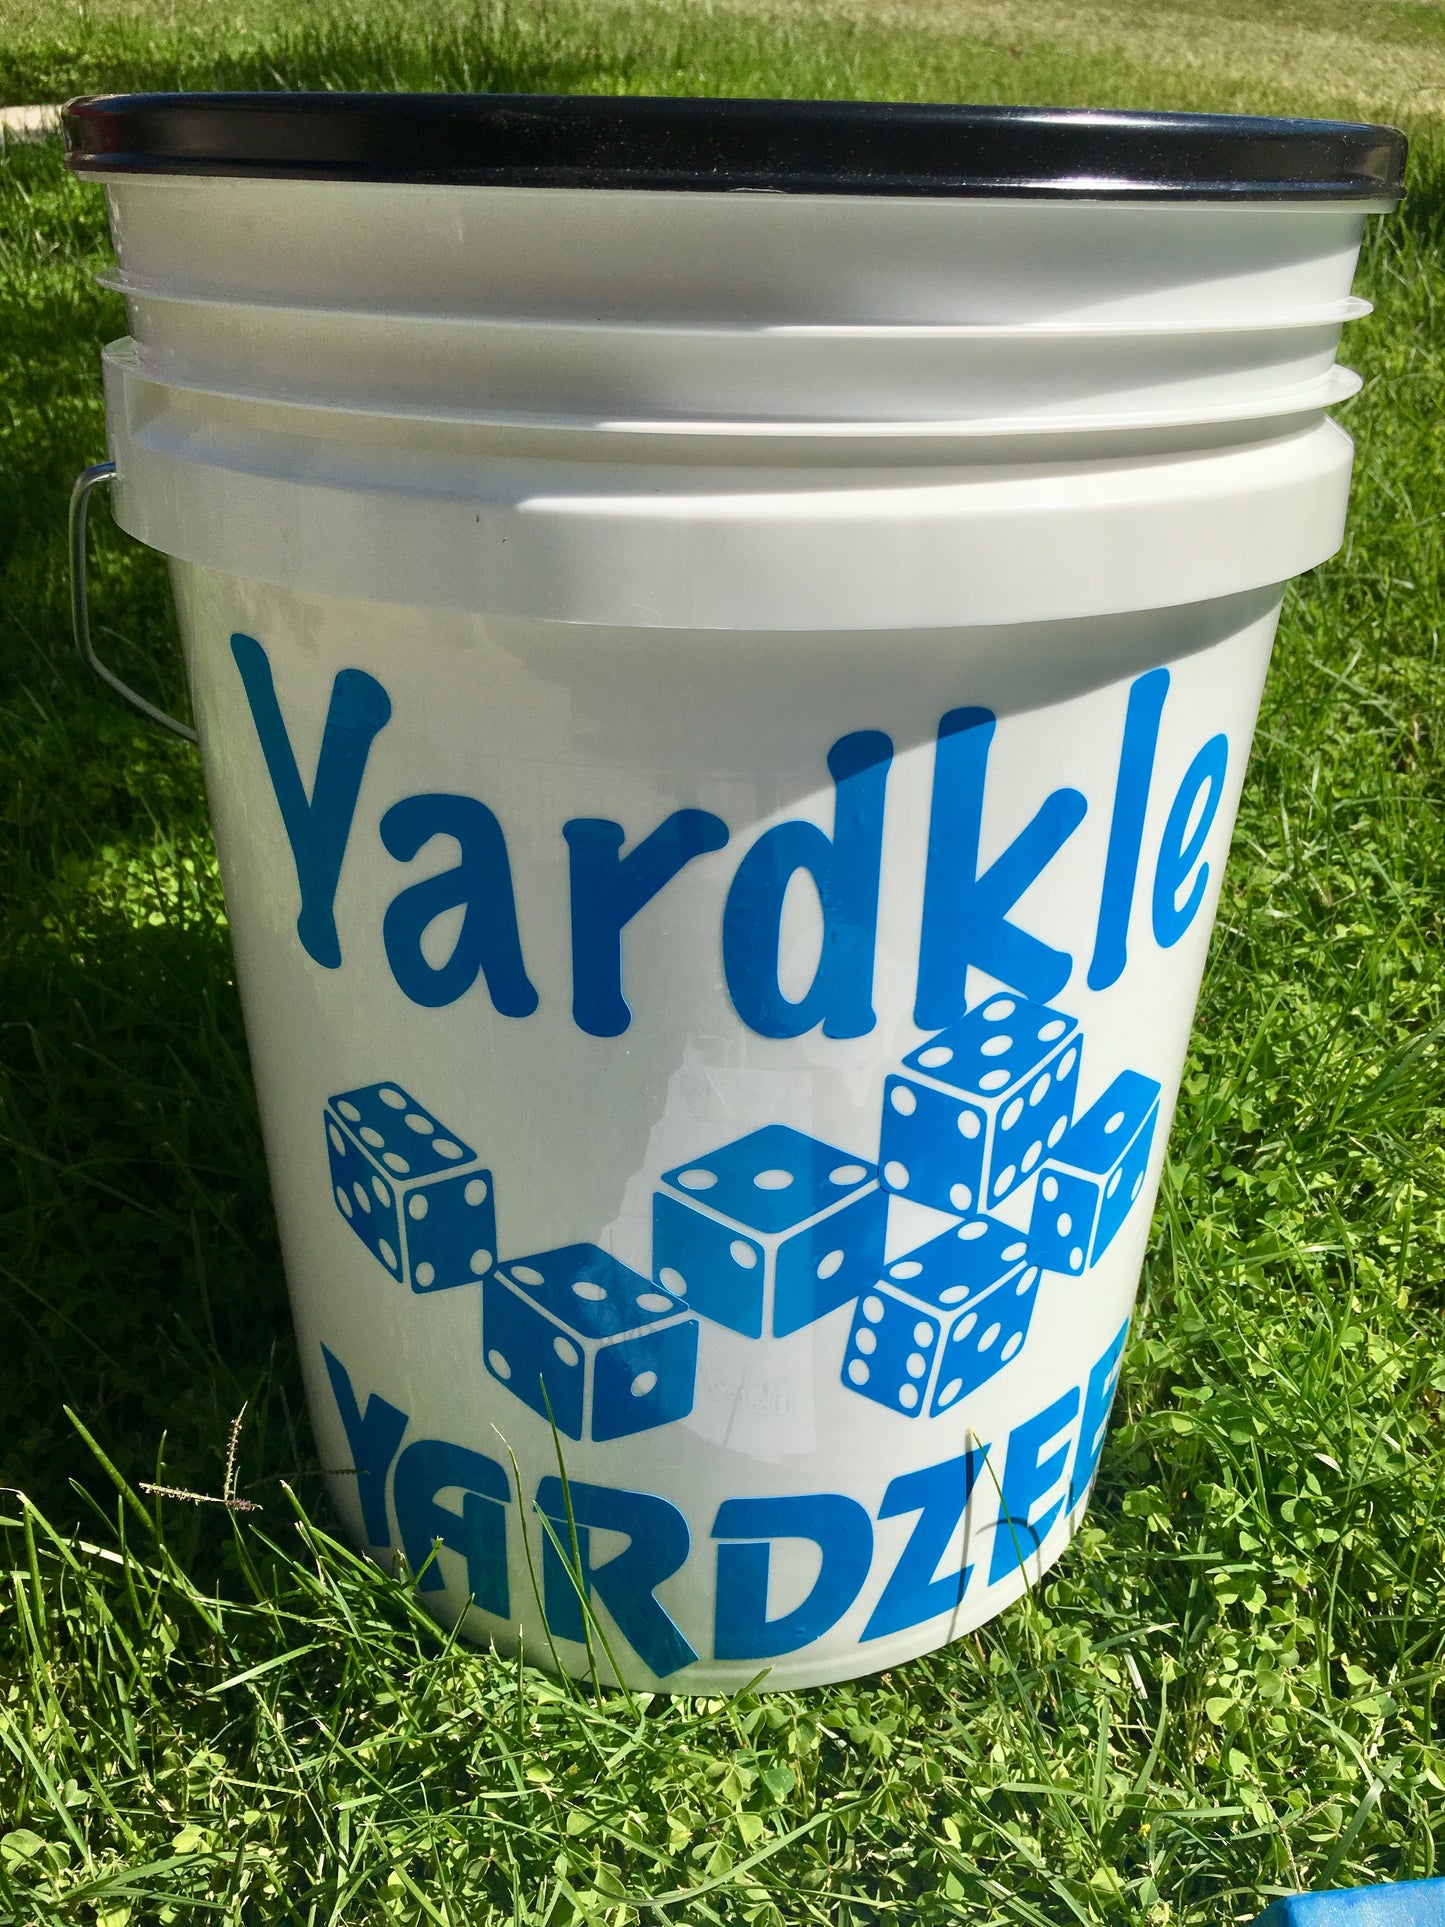 Yardzee / Yardkle Large Dice Games